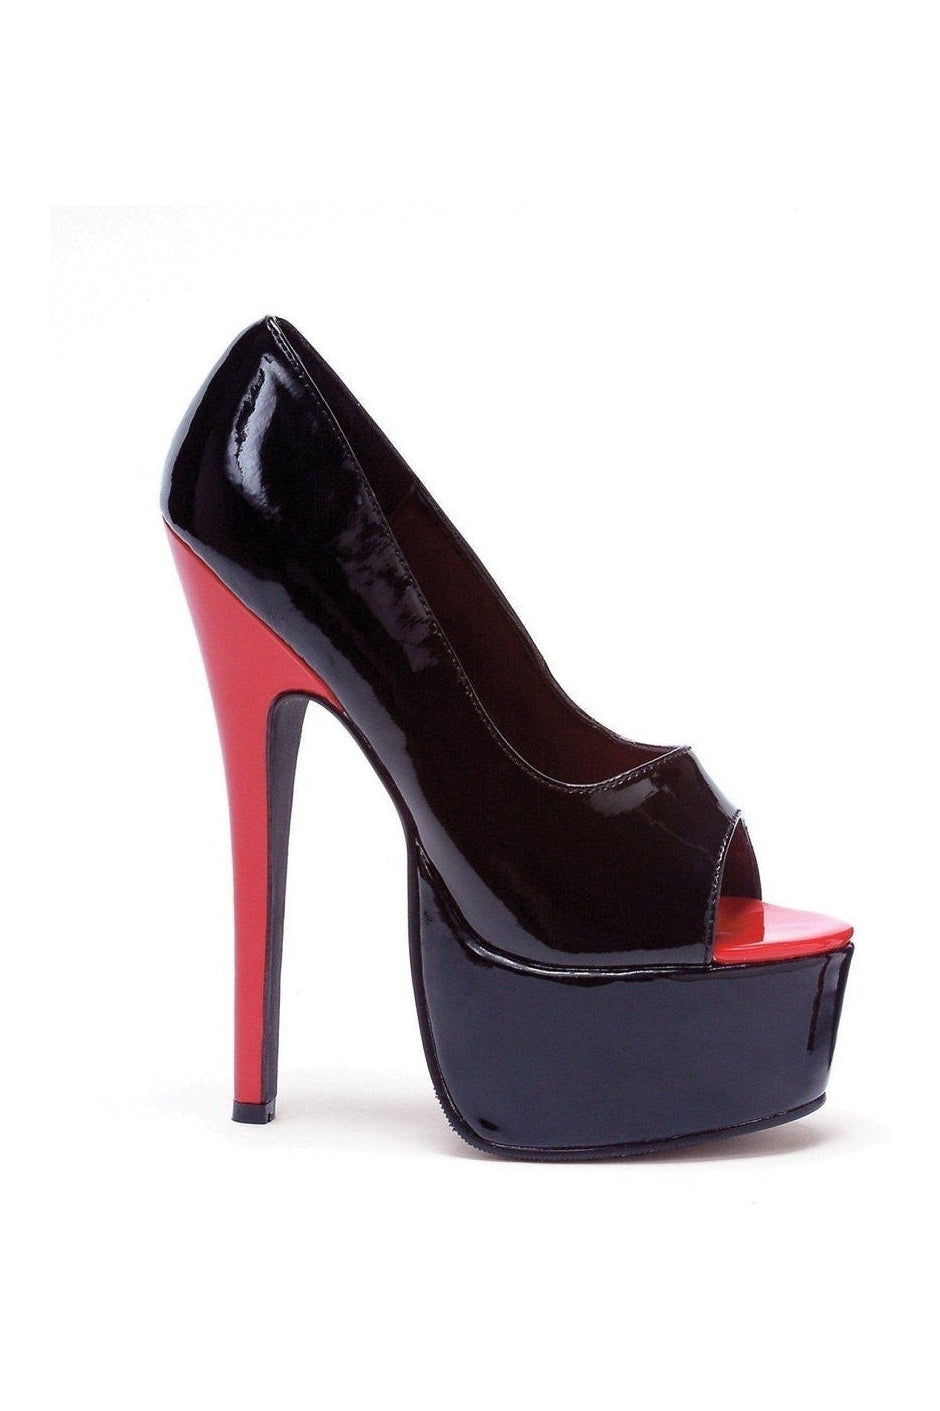 652-BONNIE Stripper Pump | Black Patent-Ellie Shoes-SEXYSHOES.COM